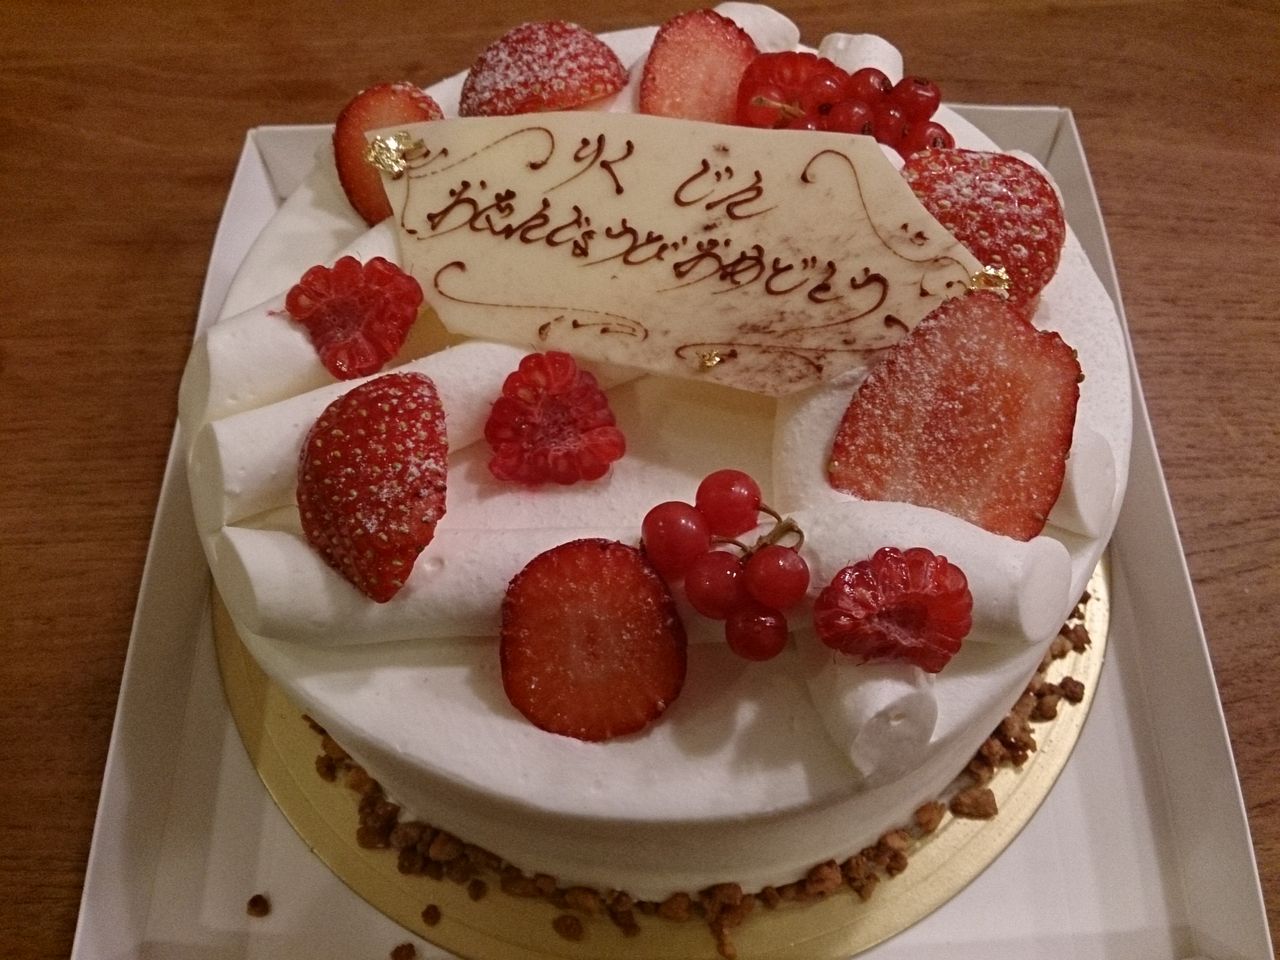 エーグル ドゥース 誕生 日 ケーキ - イメージケーキと料理